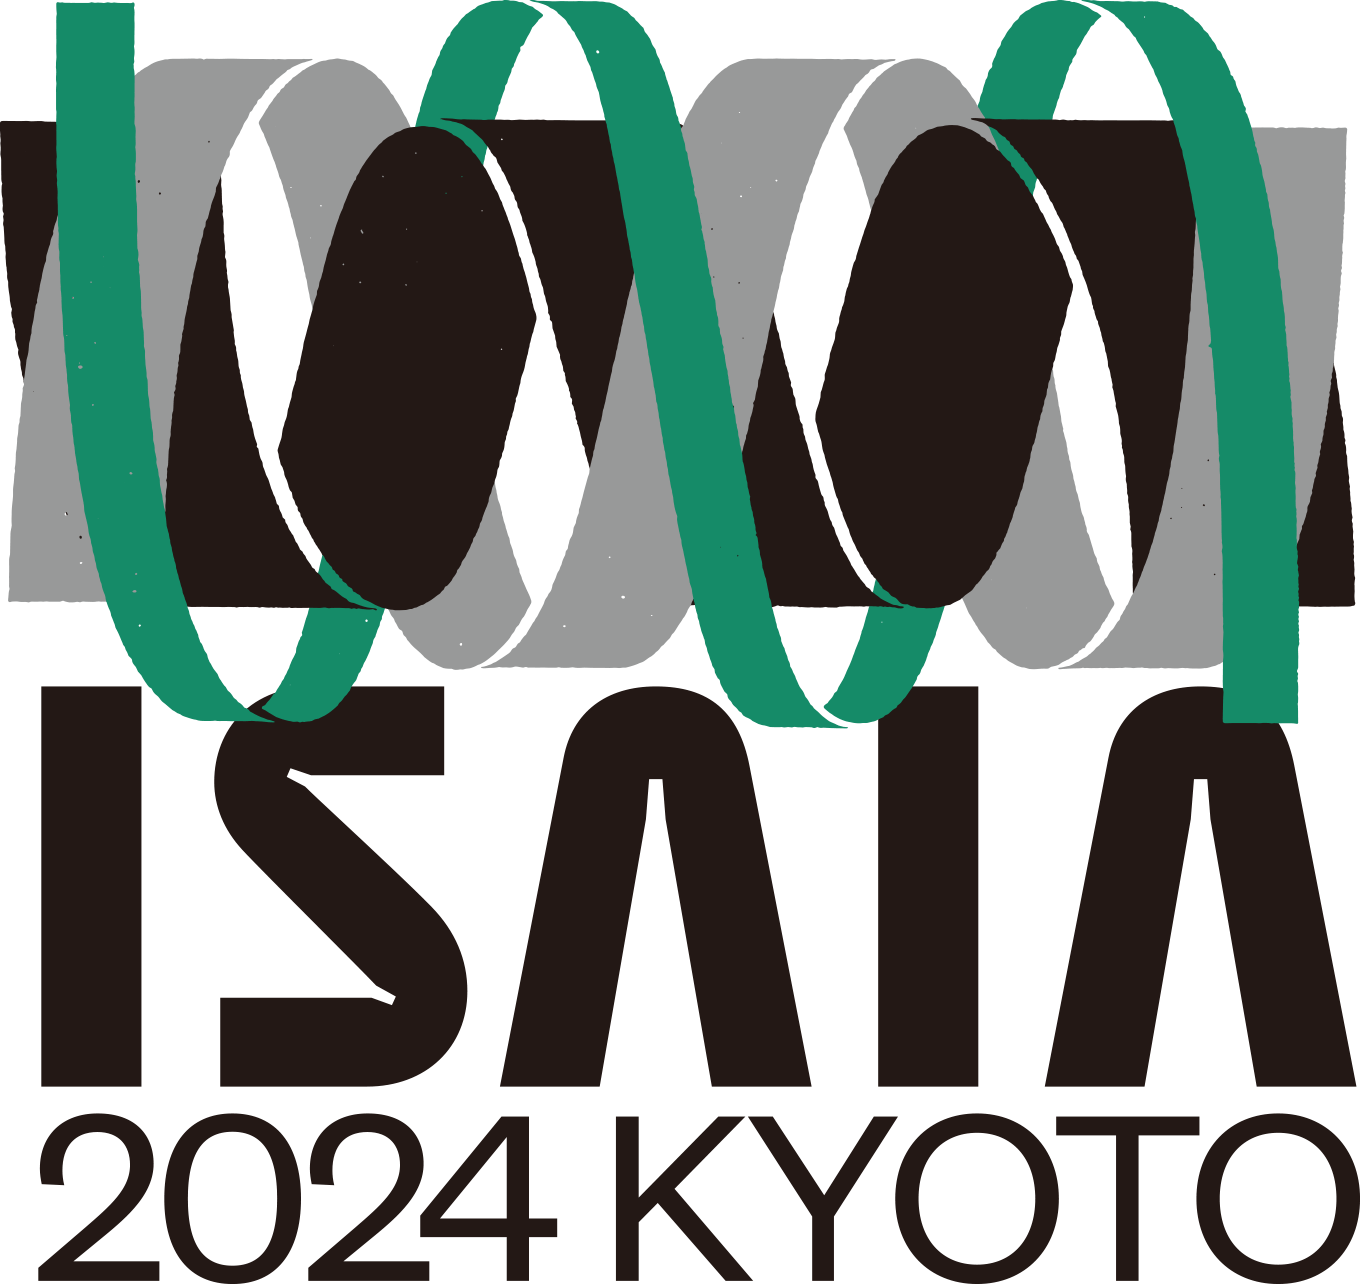 isaia 2024 kyoto